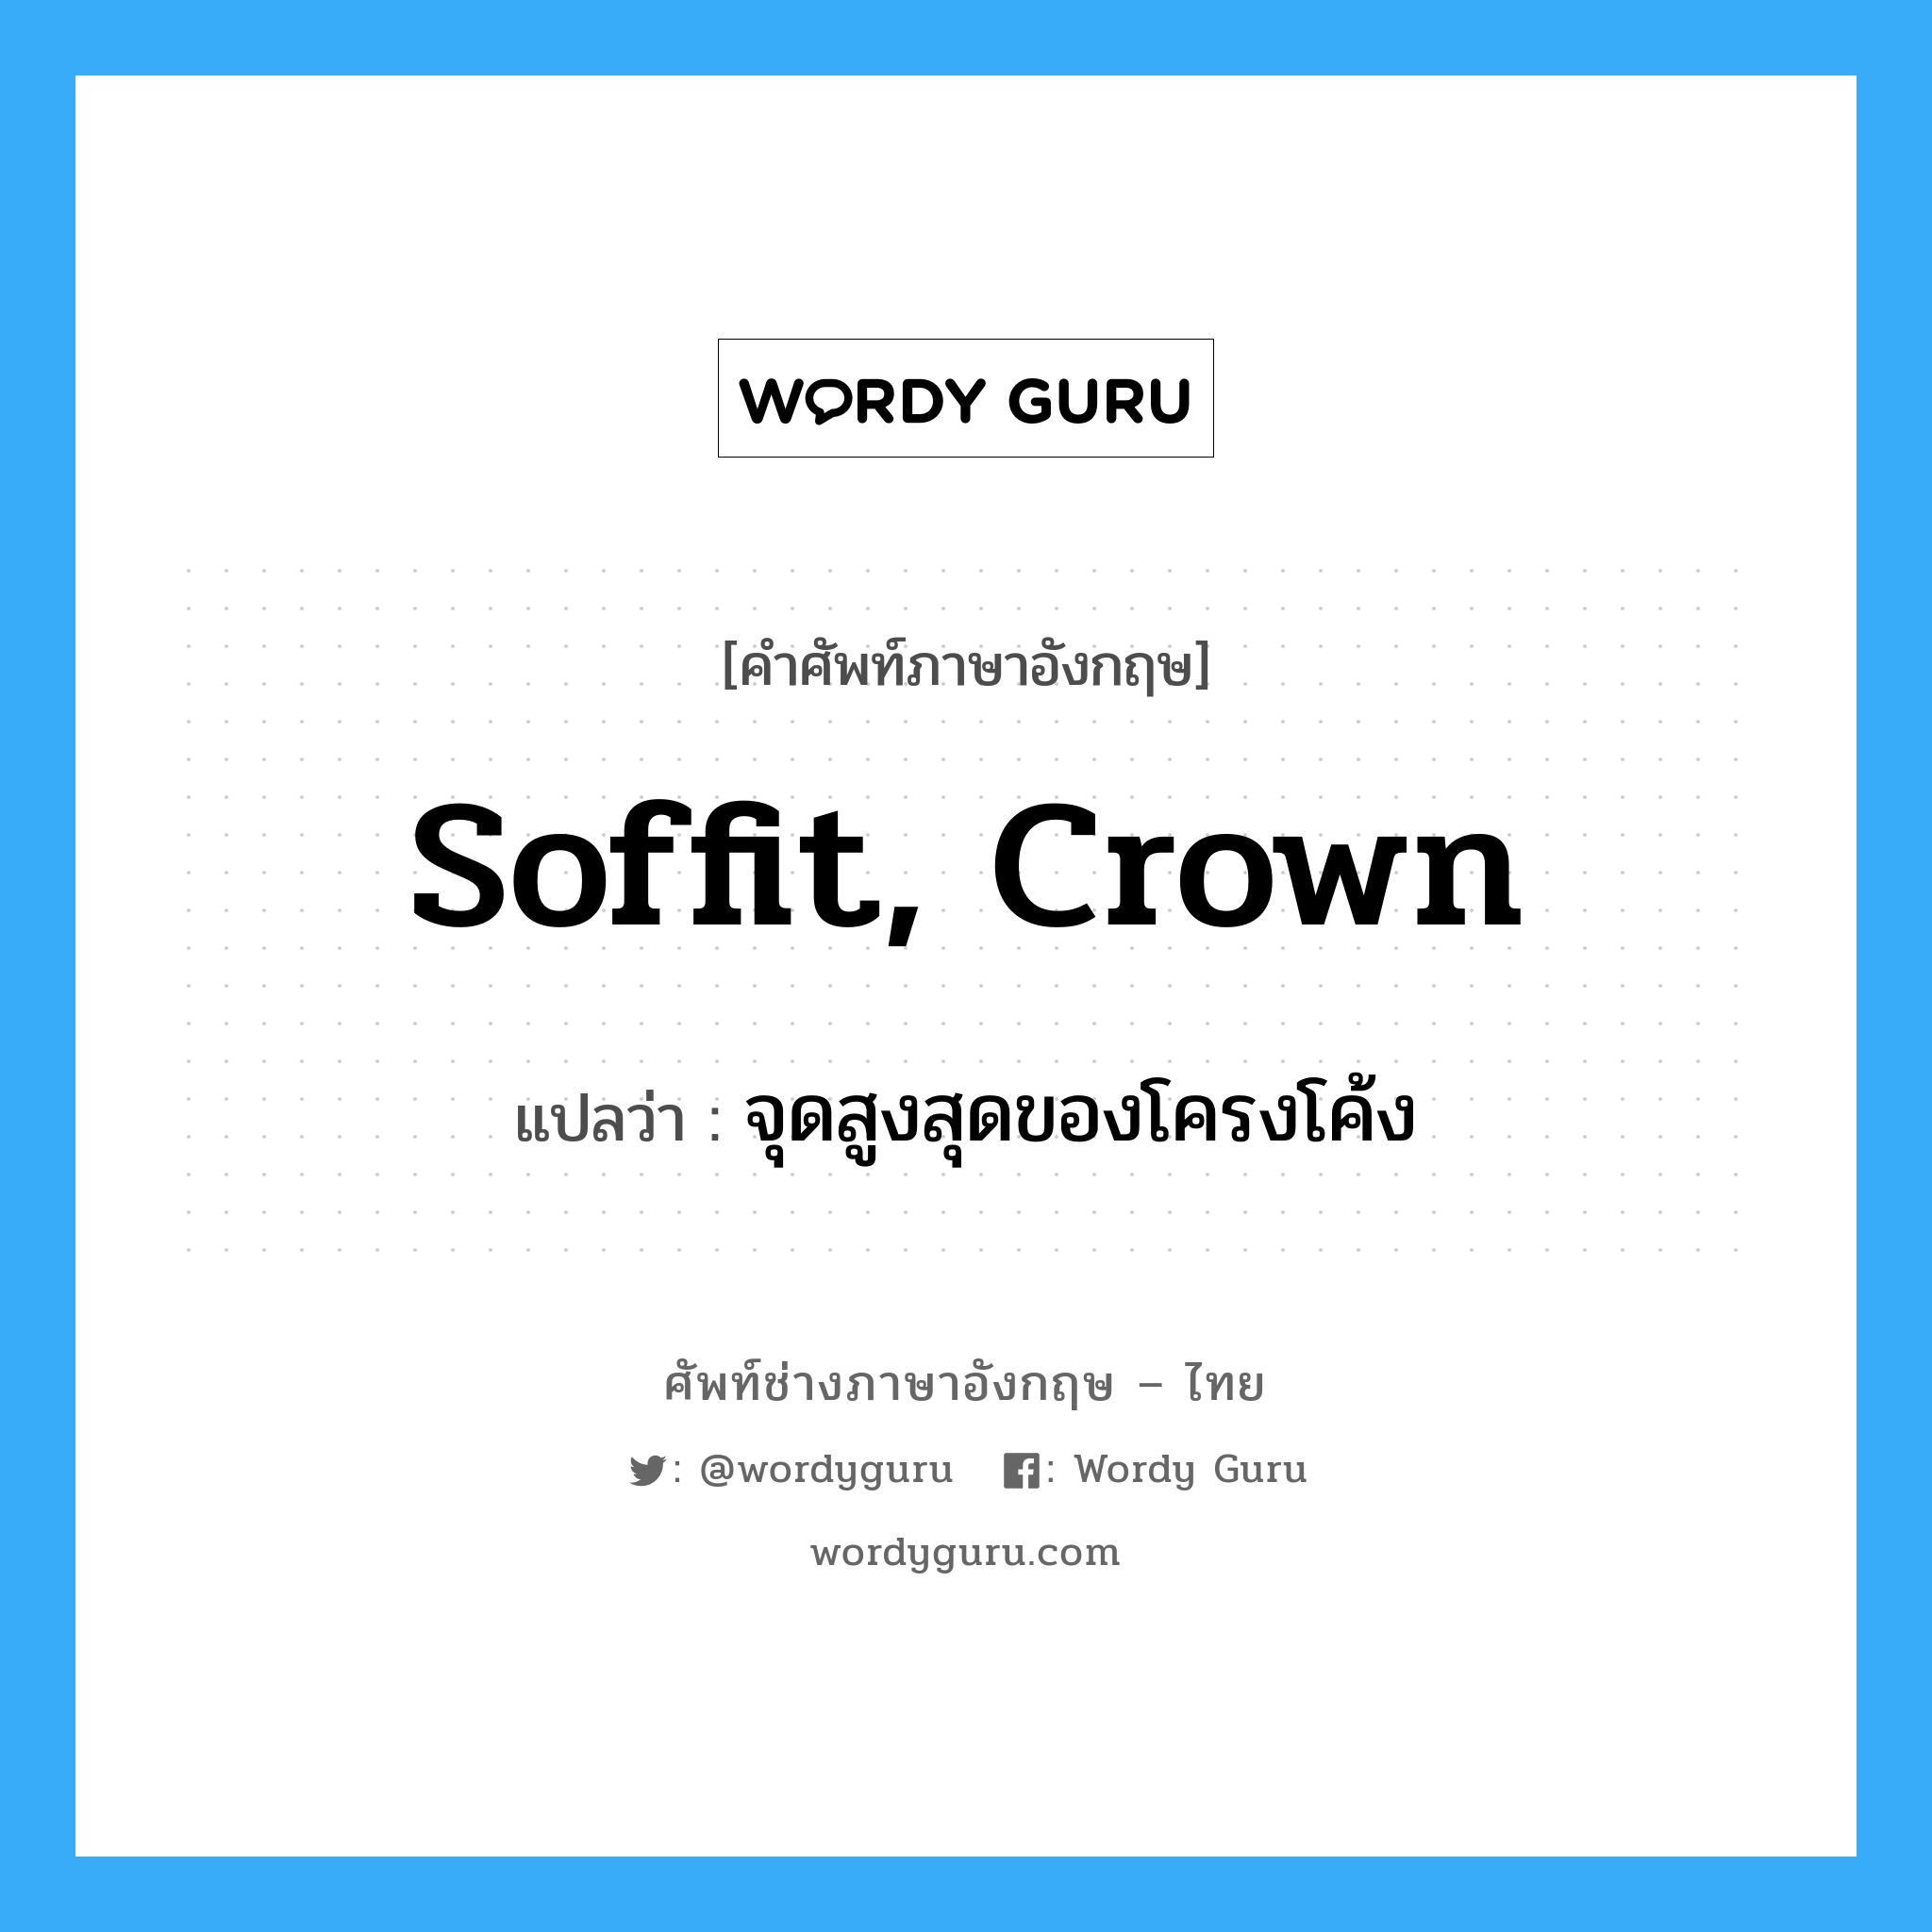 soffit, crown แปลว่า?, คำศัพท์ช่างภาษาอังกฤษ - ไทย soffit, crown คำศัพท์ภาษาอังกฤษ soffit, crown แปลว่า จุดสูงสุดของโครงโค้ง